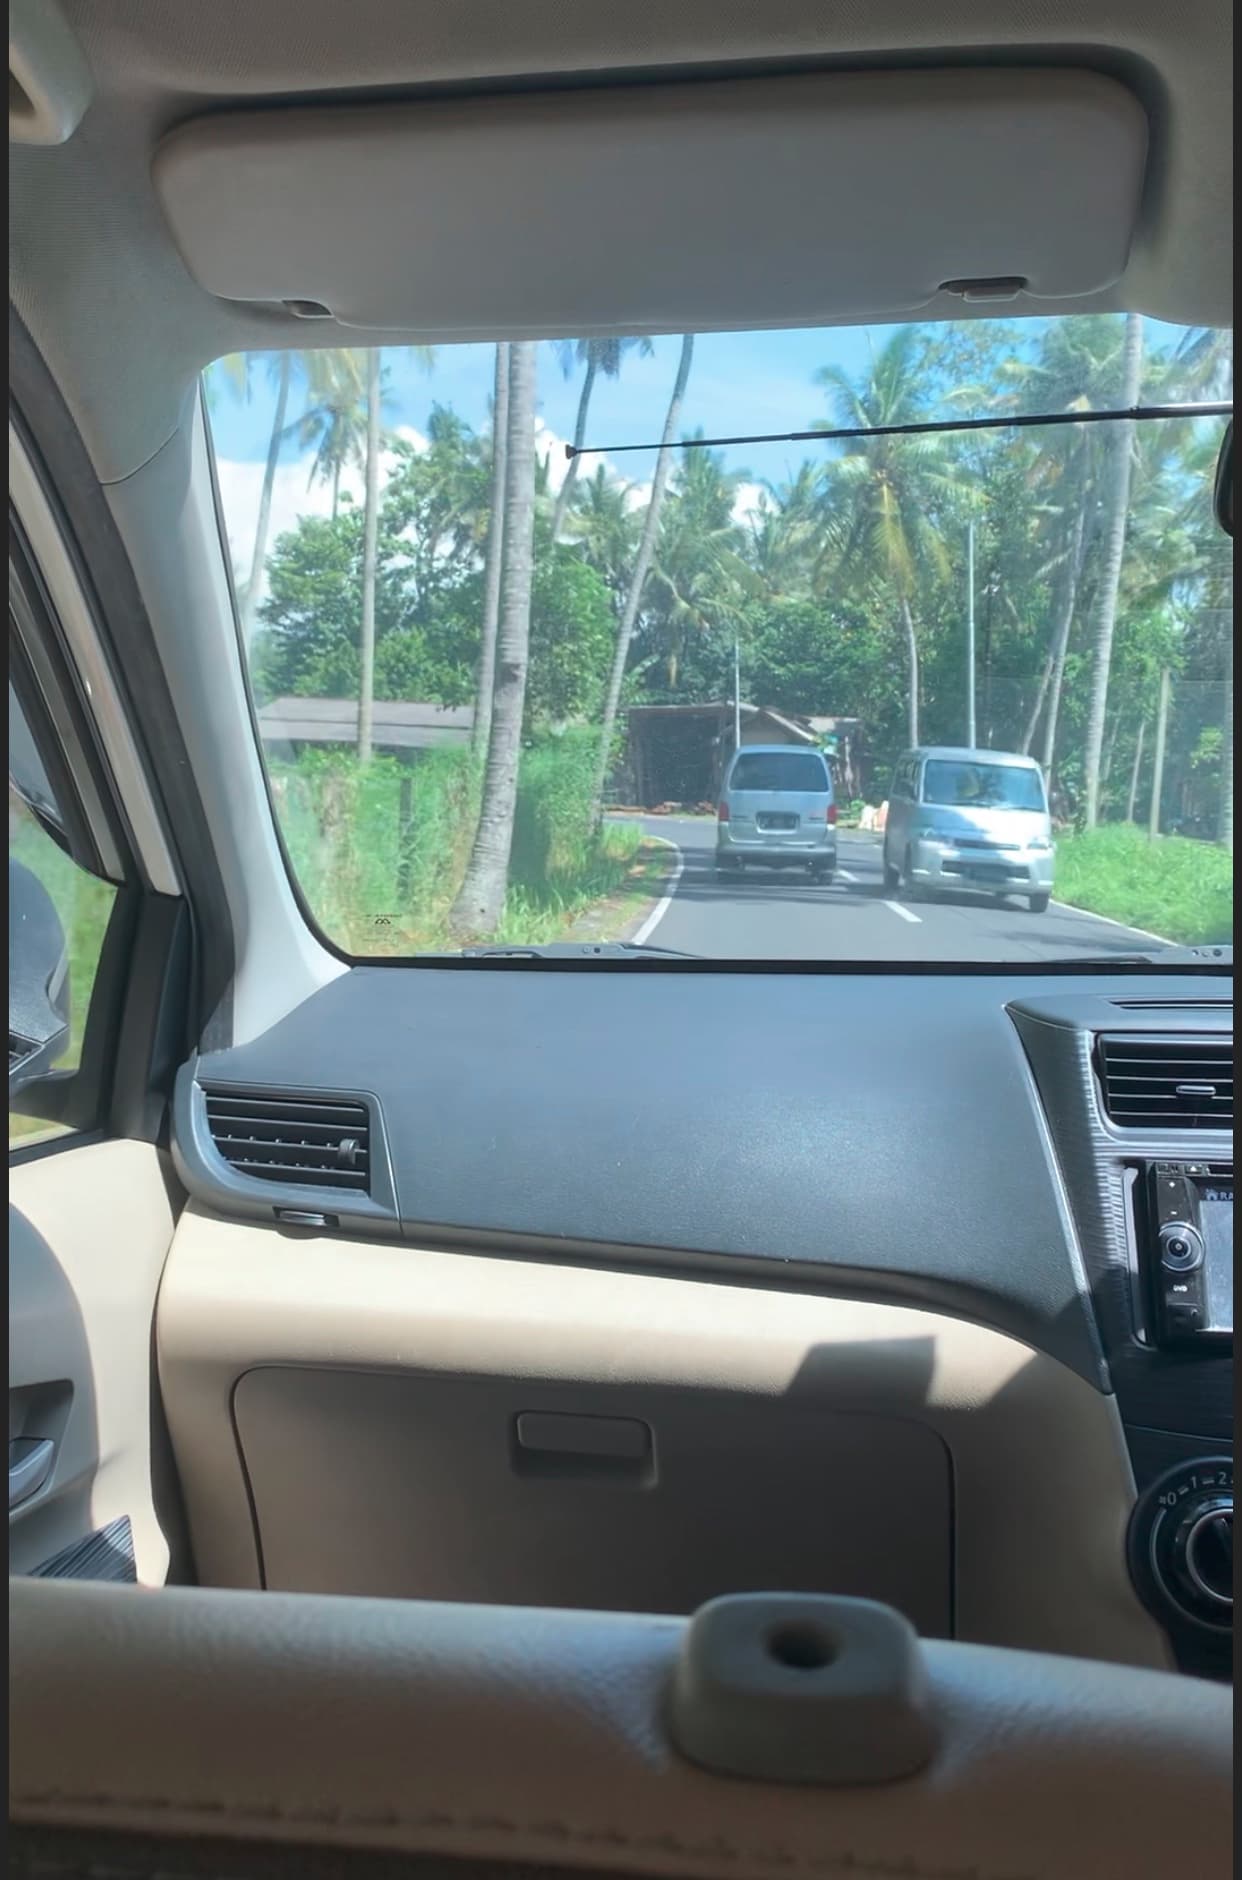 Вид с пассажирского сиденья праворульного автомобиля. По сторонам дороги пальмы.